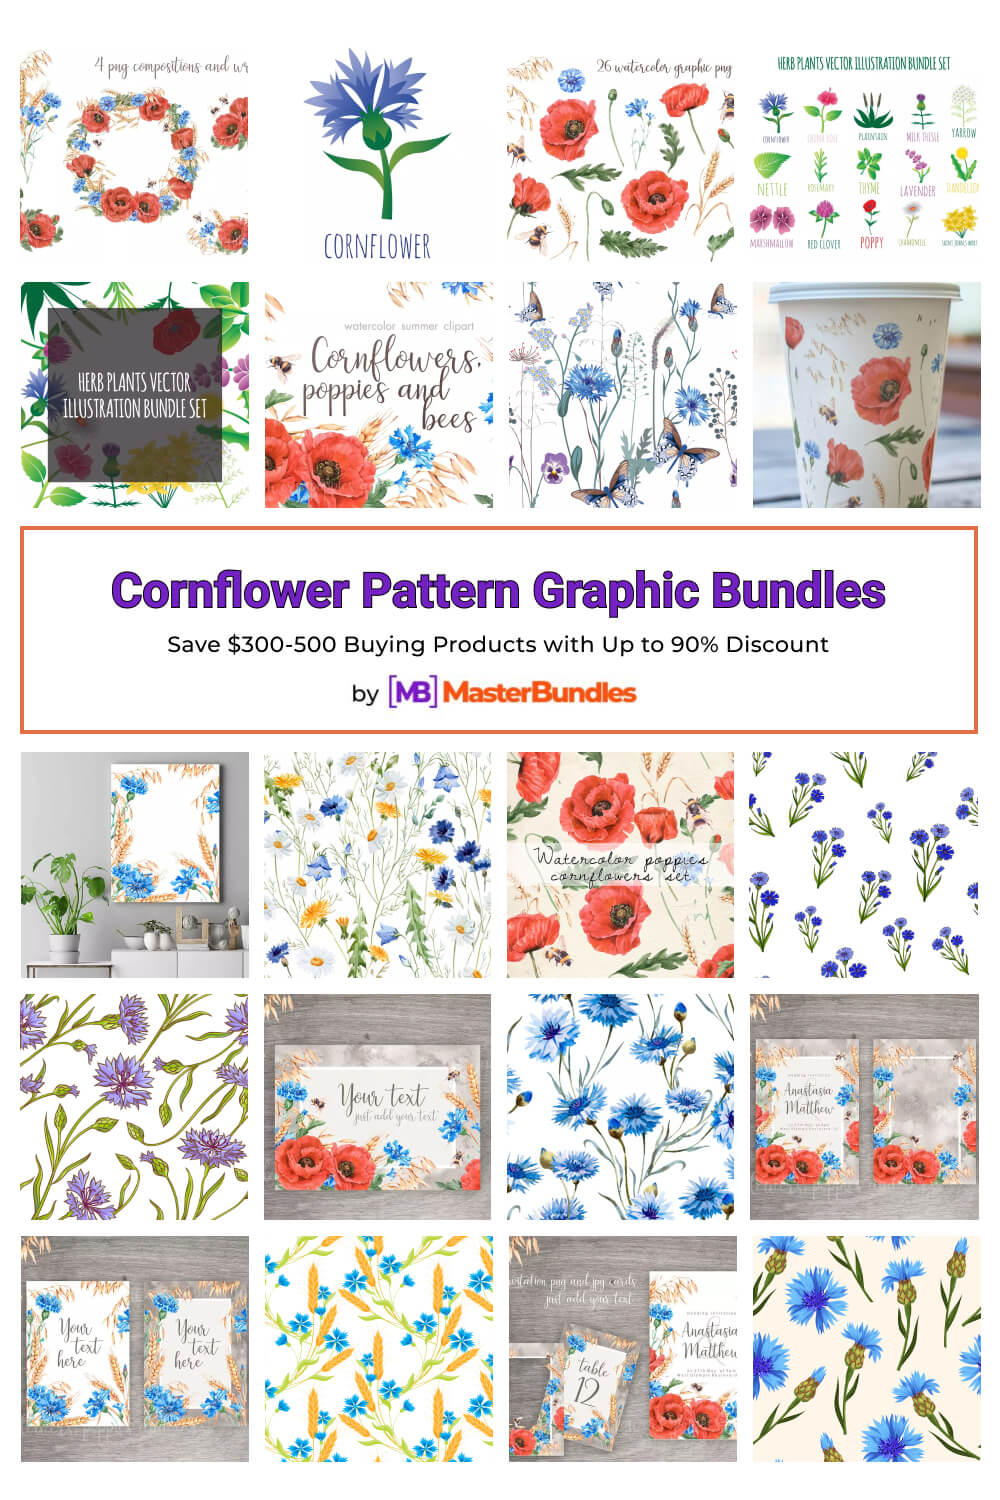 cornflower pattern graphic bundles pinterest image.